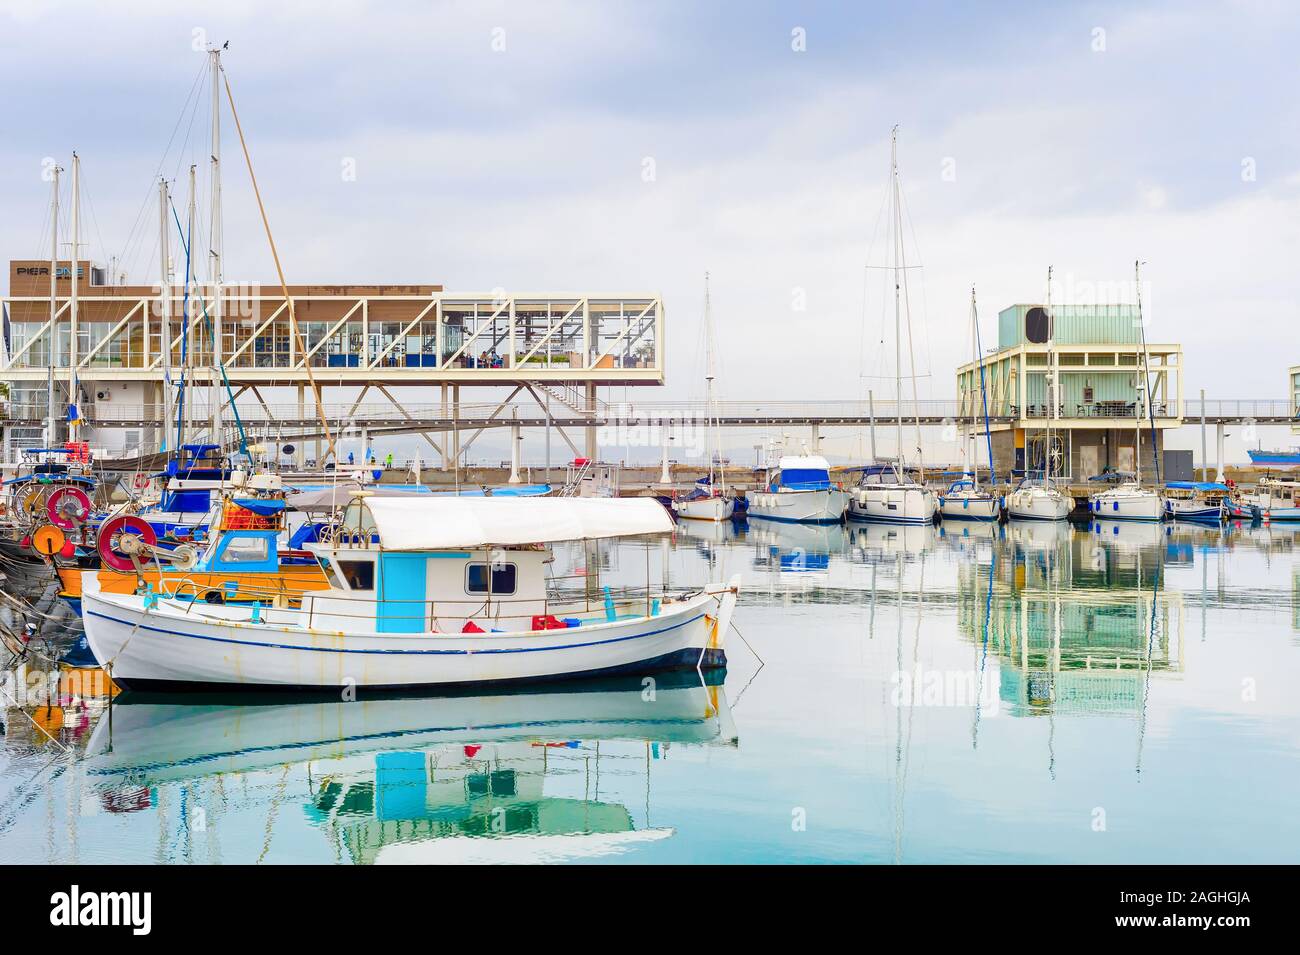 La ville de Limassol, vue sur le port de pêche amarrés les bateaux à moteur, des restaurants sur la jetée sous un ciel avec des nuages de pluie, Chypre Banque D'Images